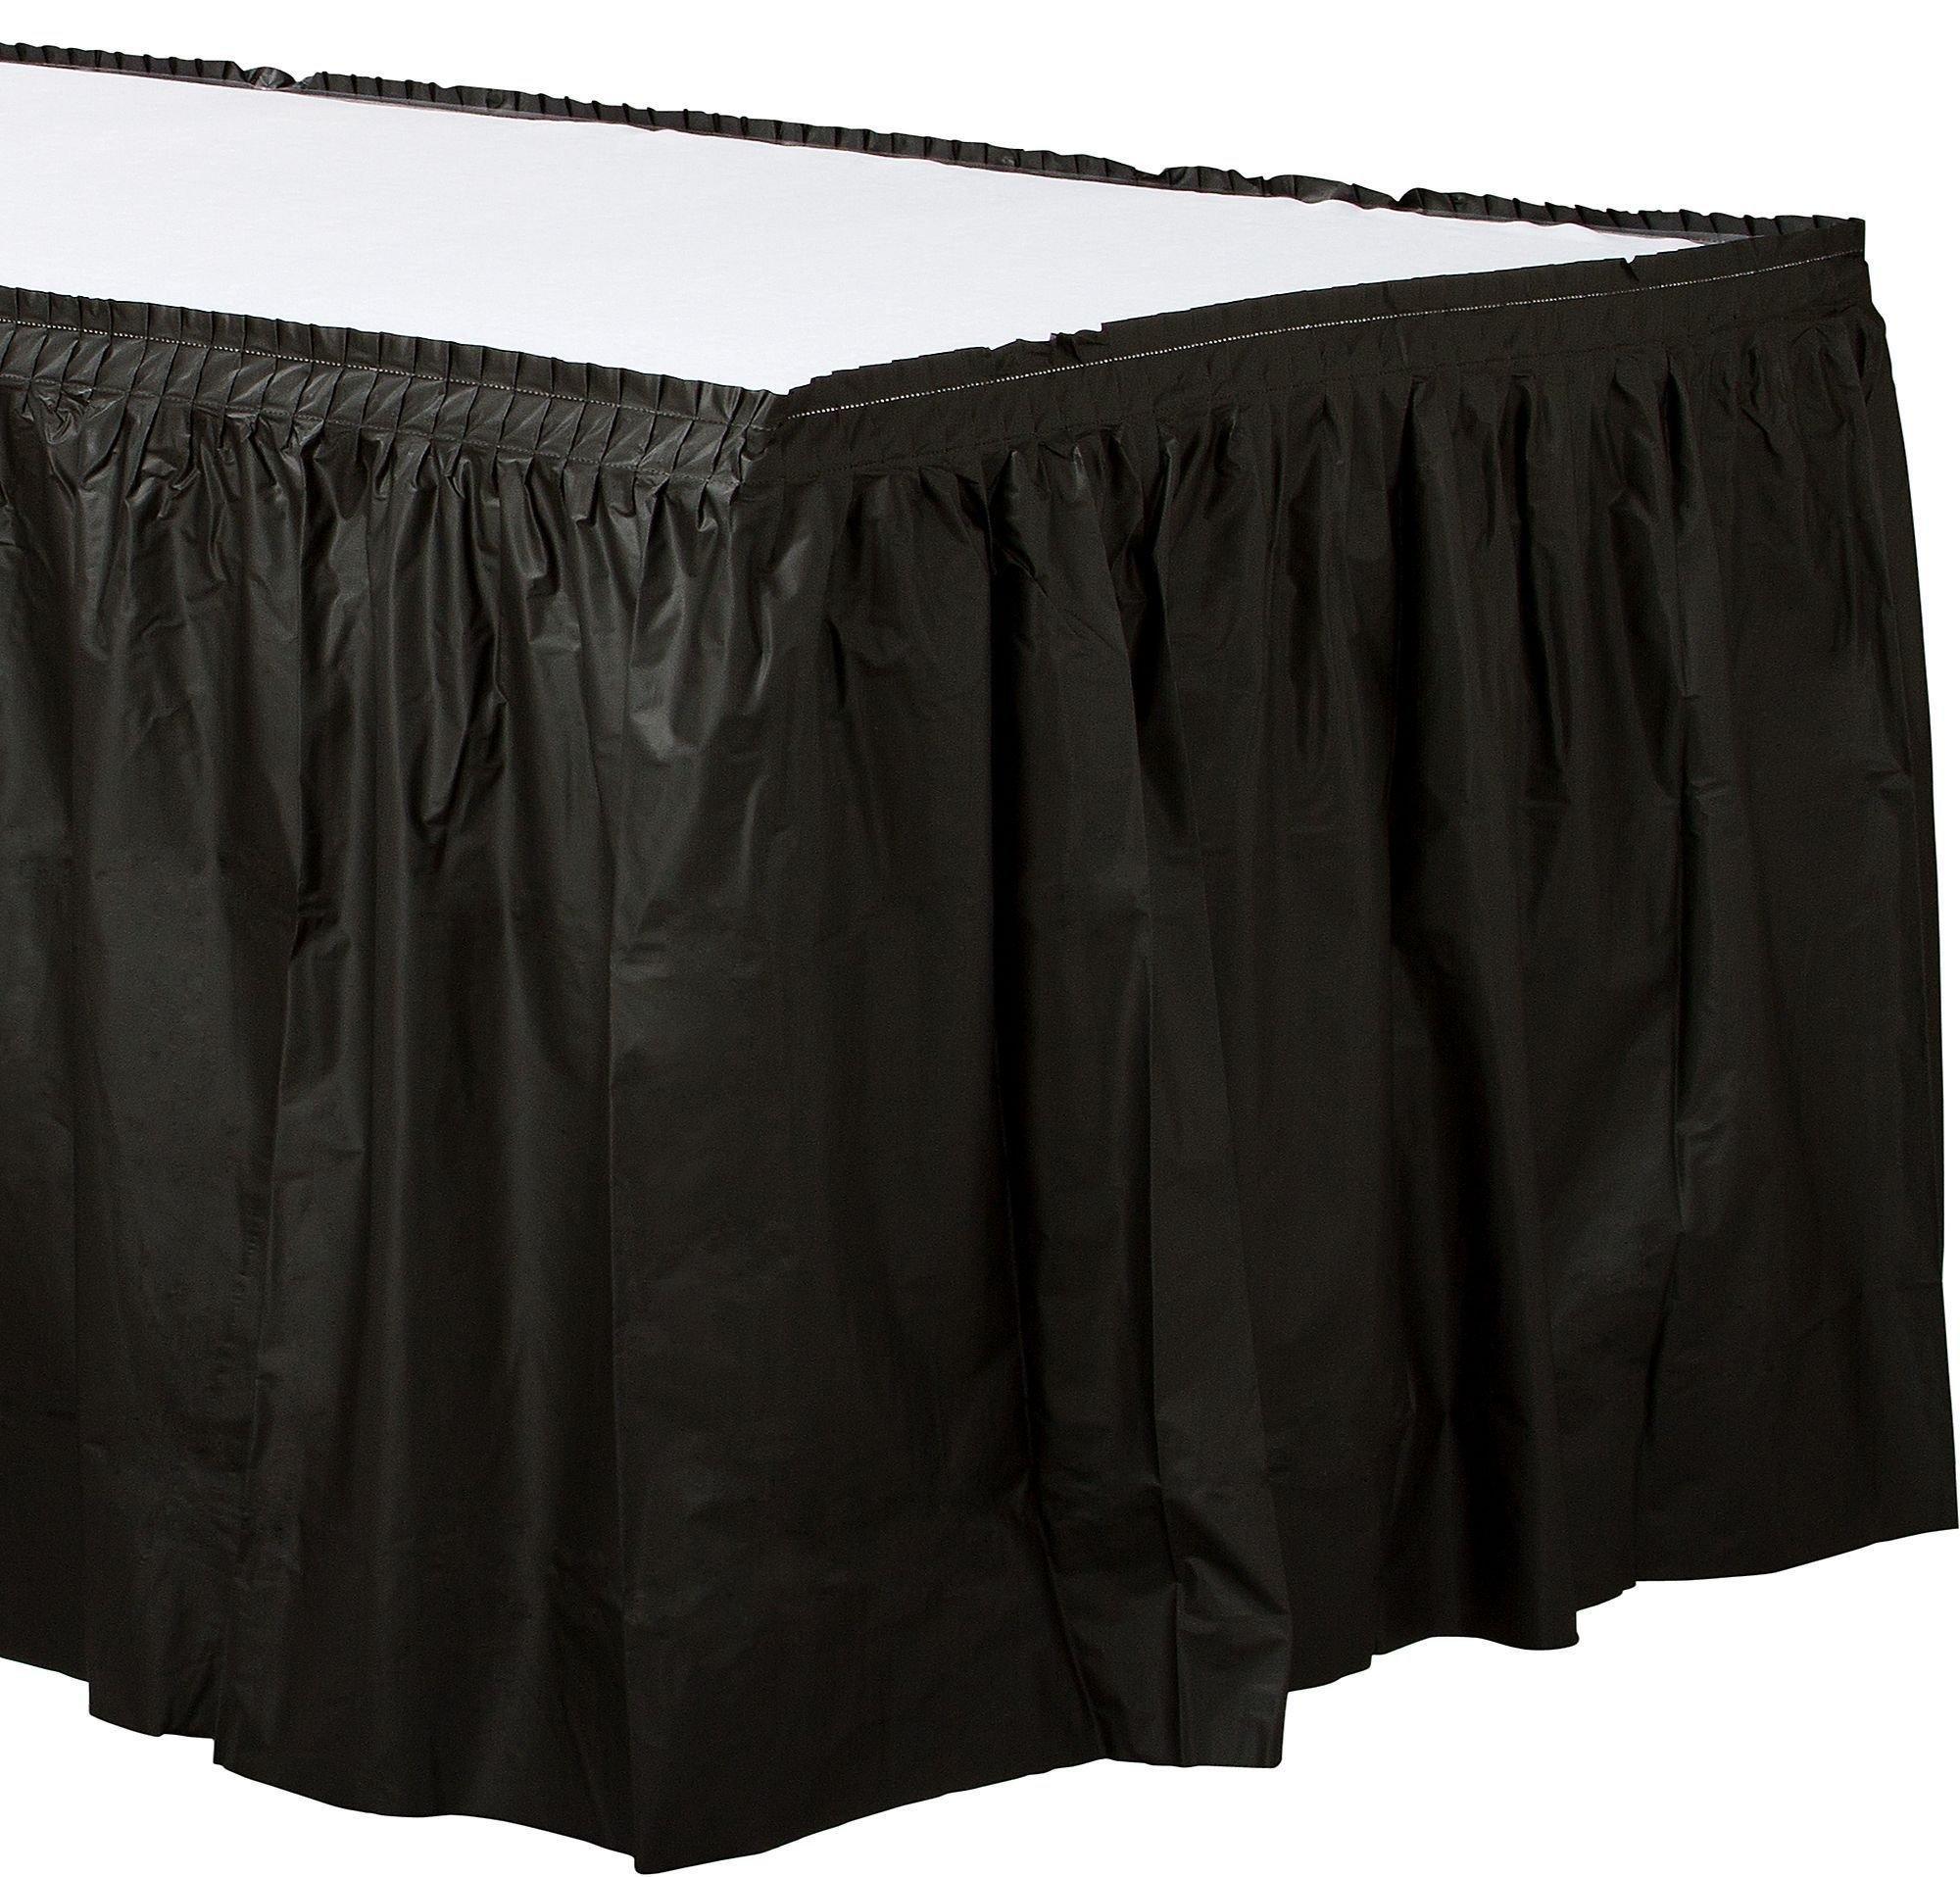 Black Plastic Table Skirt, 21ft x 29in